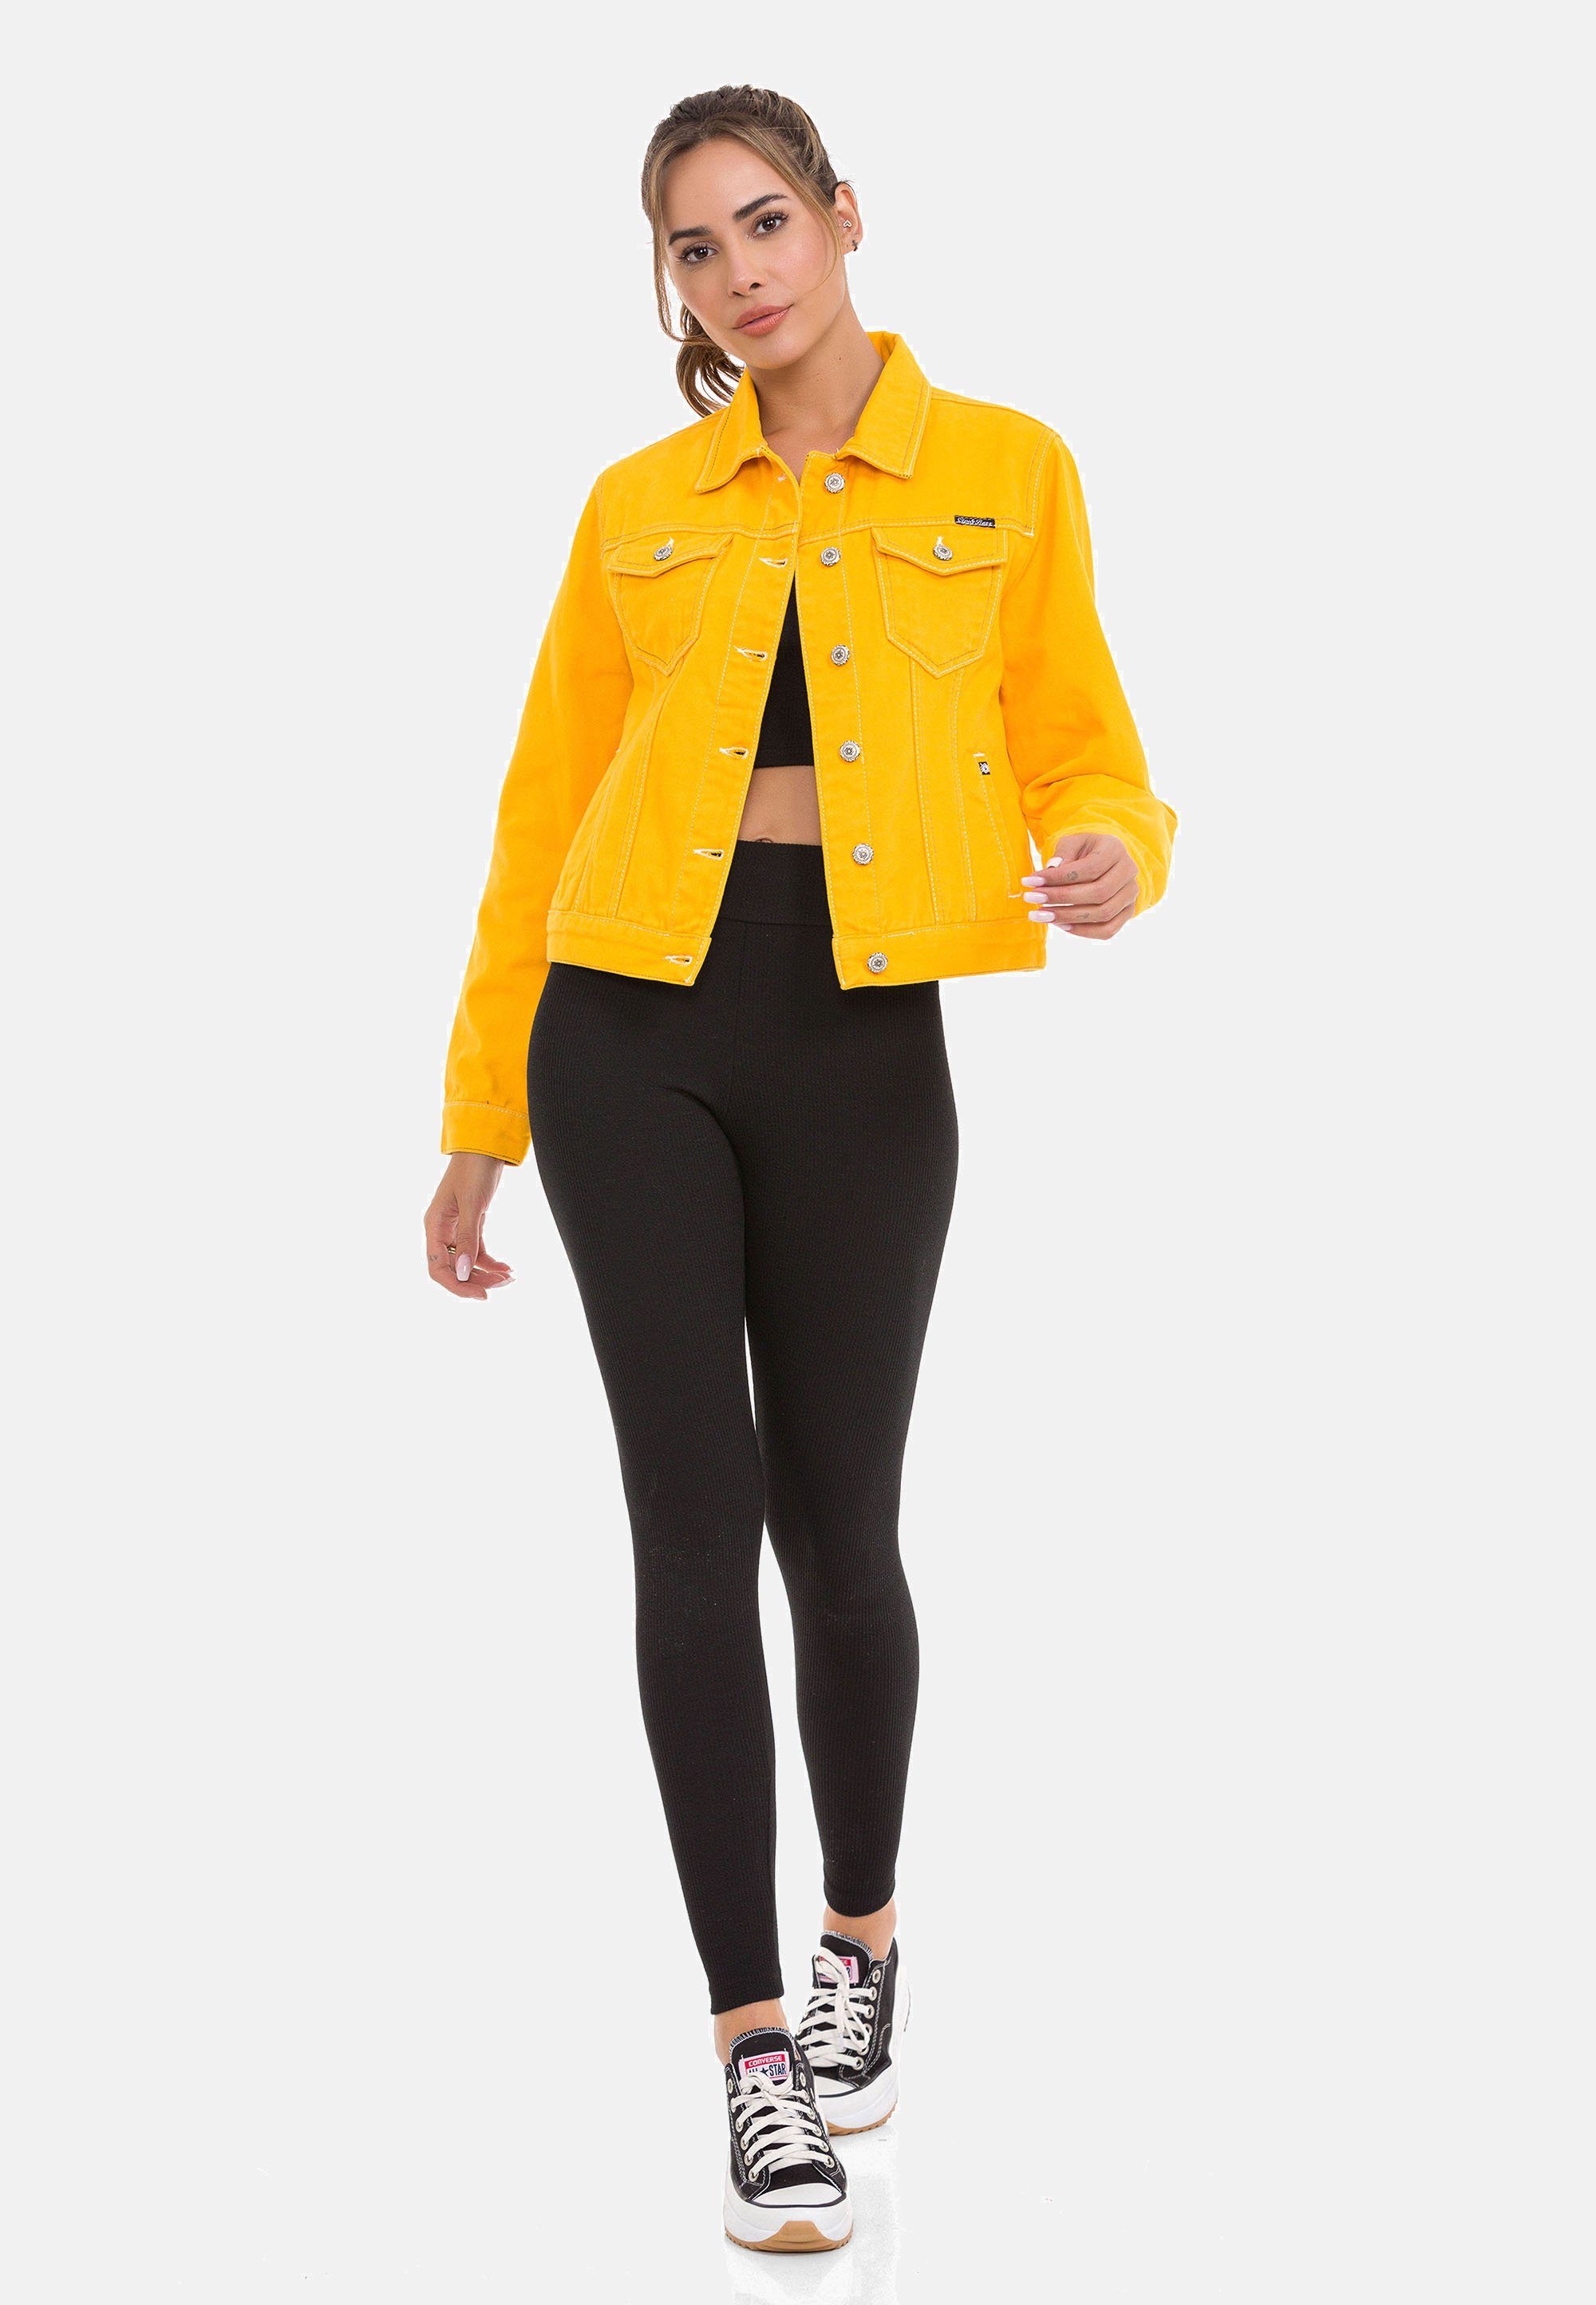 Baxx Cipo Look & gelb in Jeansjacke modernem